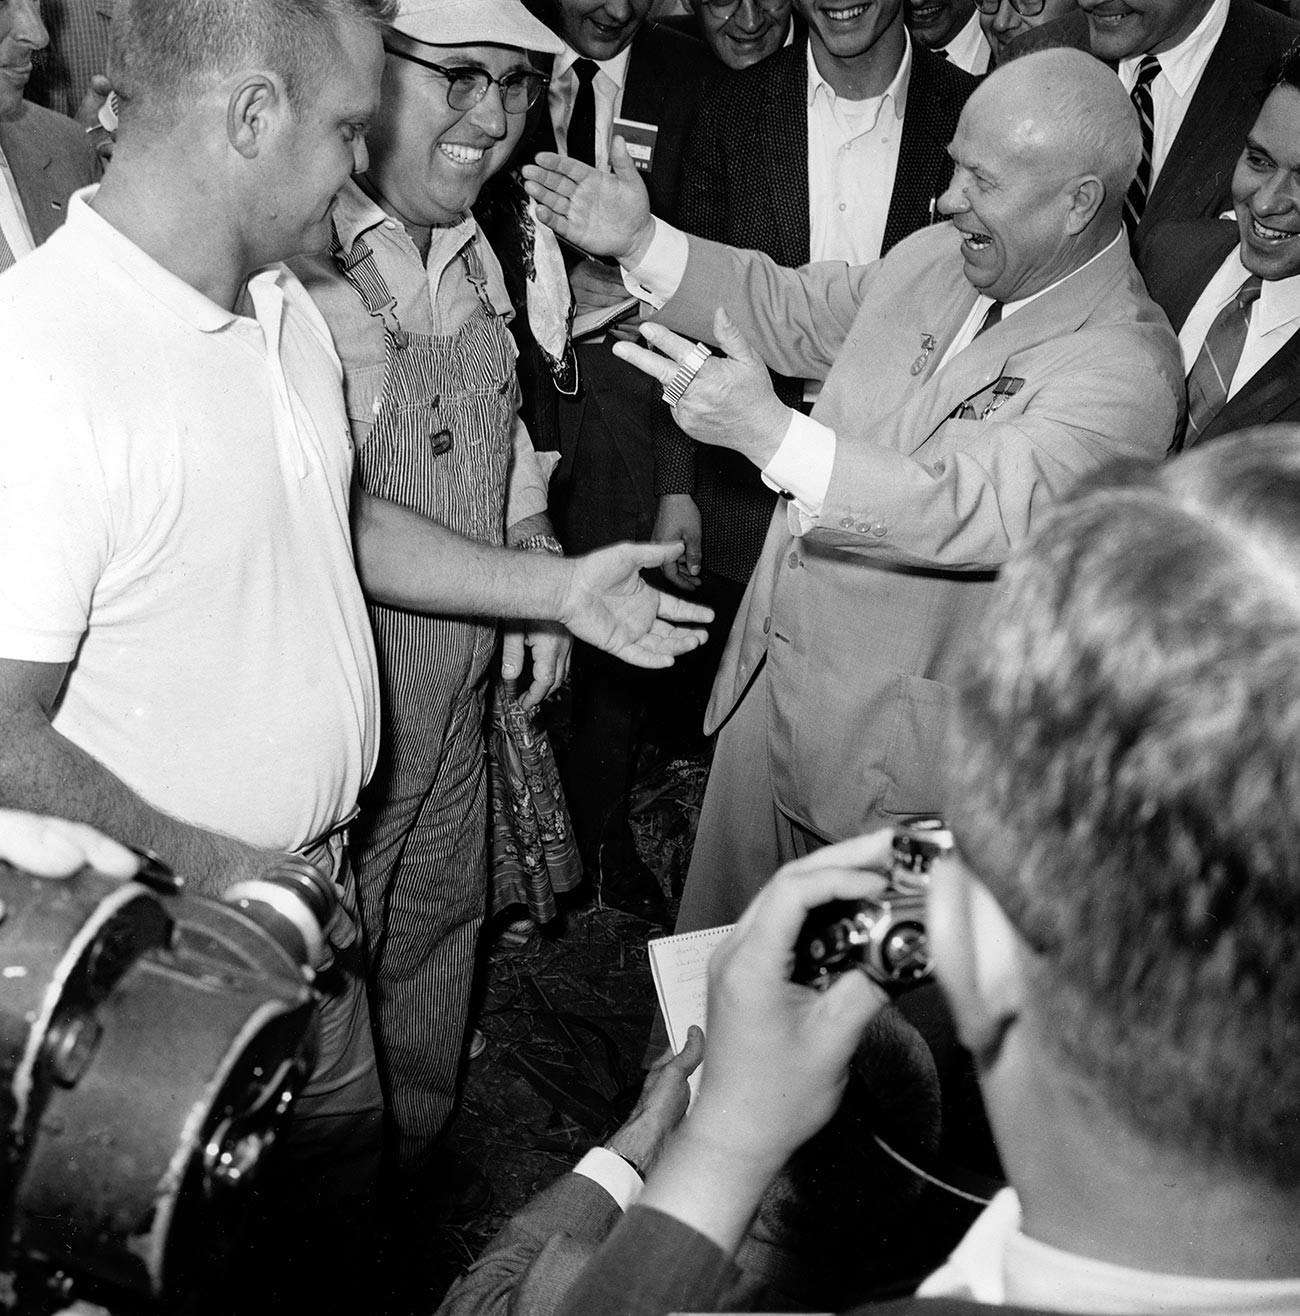 Sovjetski vođa Nikita Hruščov tokom posjeta Americi zbija šale sa žiteljem Iowe na prijemu koji su organizirali Sovjeti, Coon Rapids, Iowa, SAD.